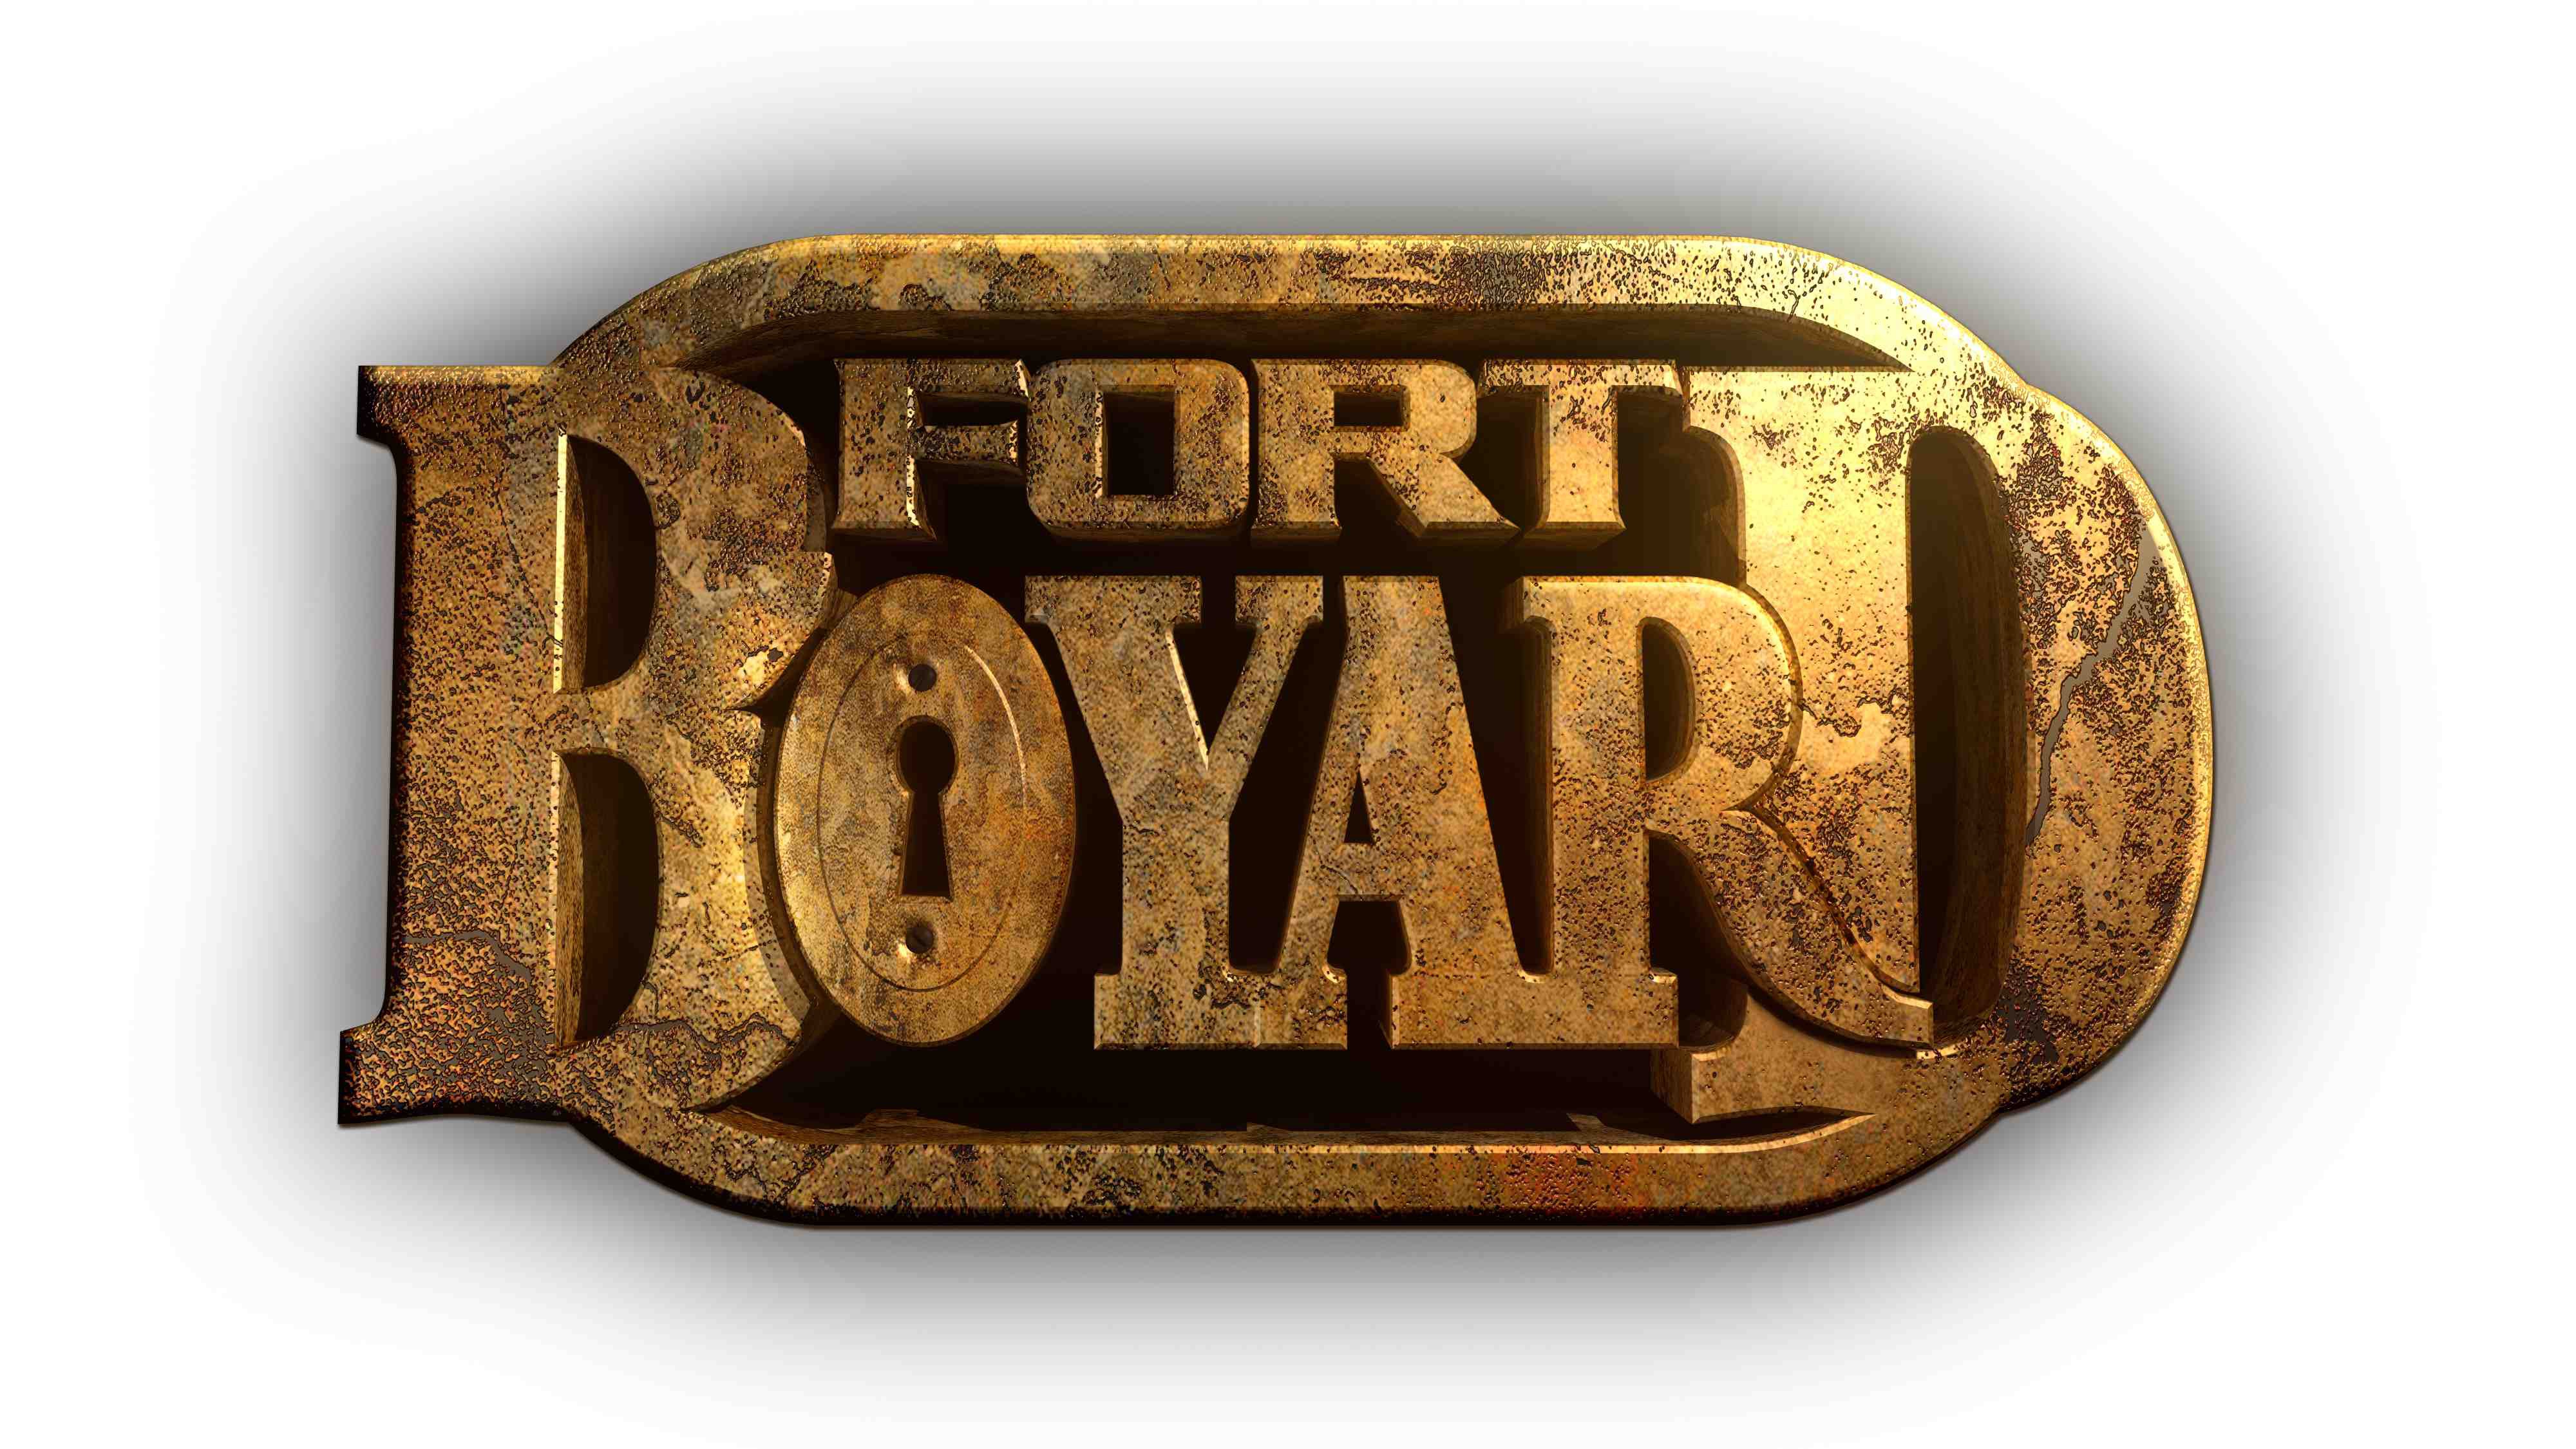  fort boyard logo 